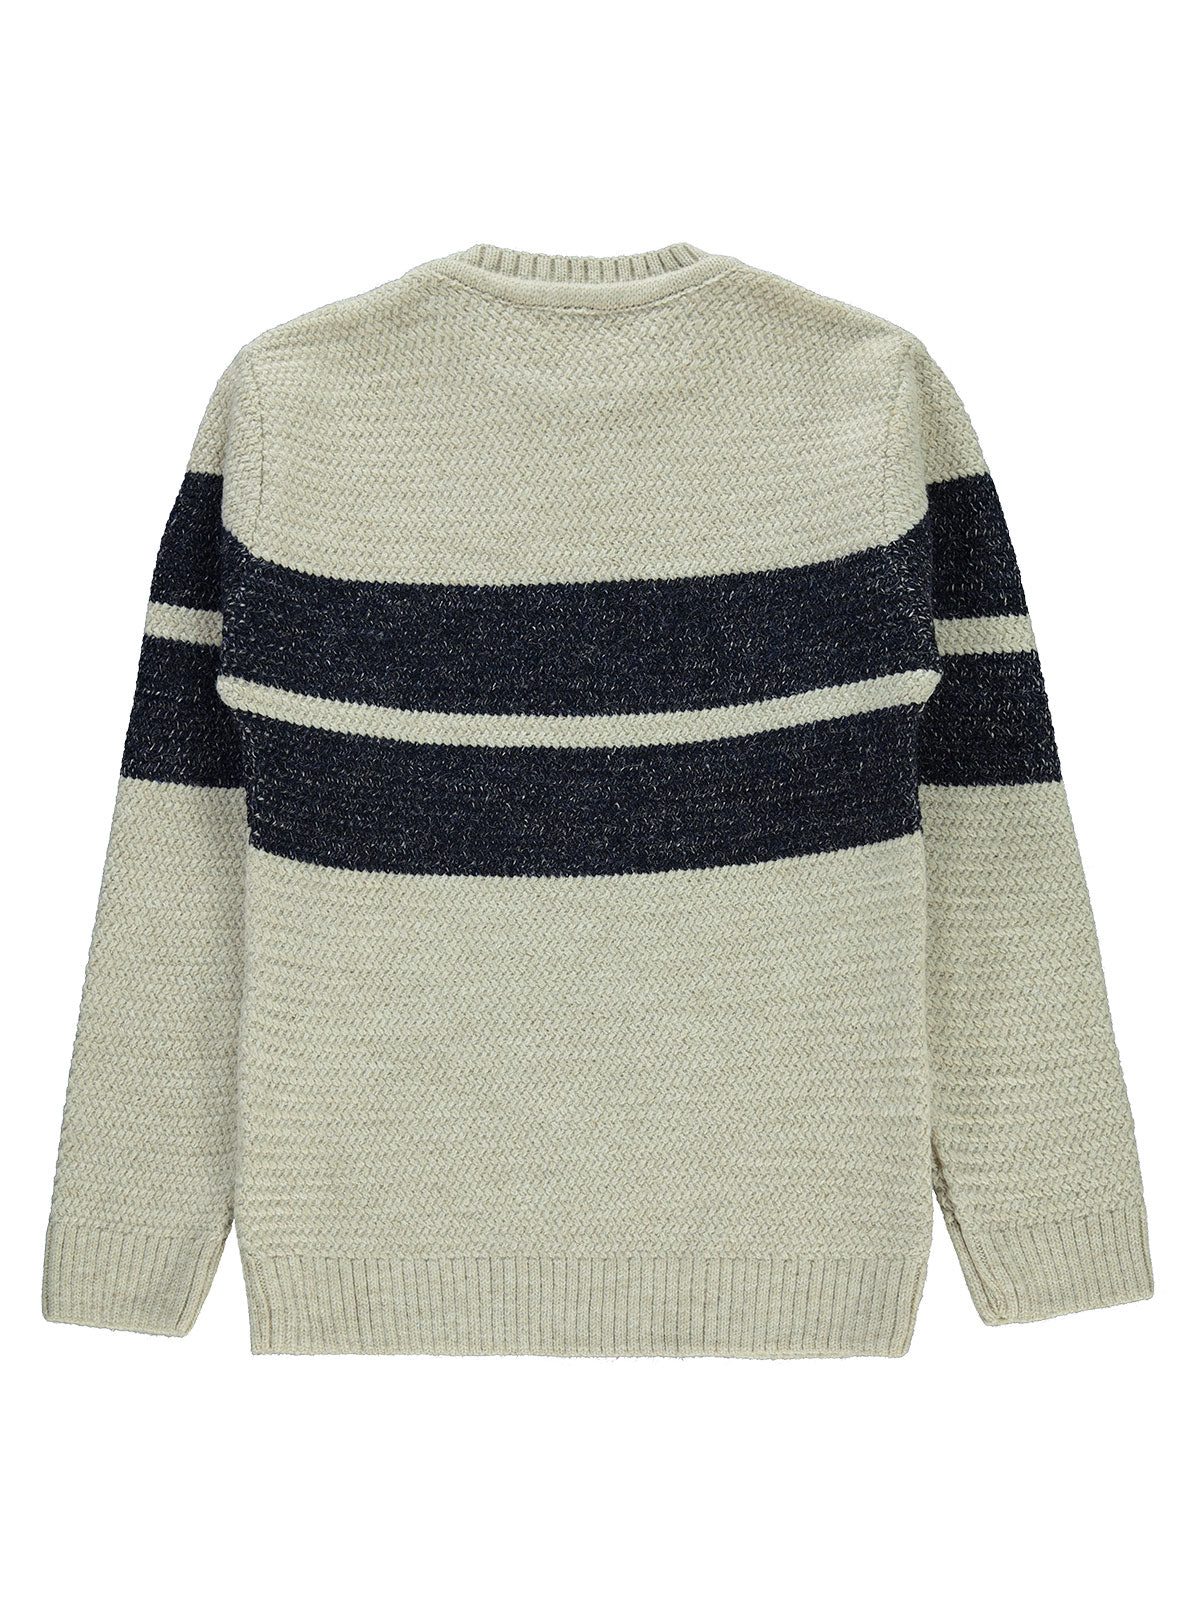 Knitwear Sweater 6-9 years